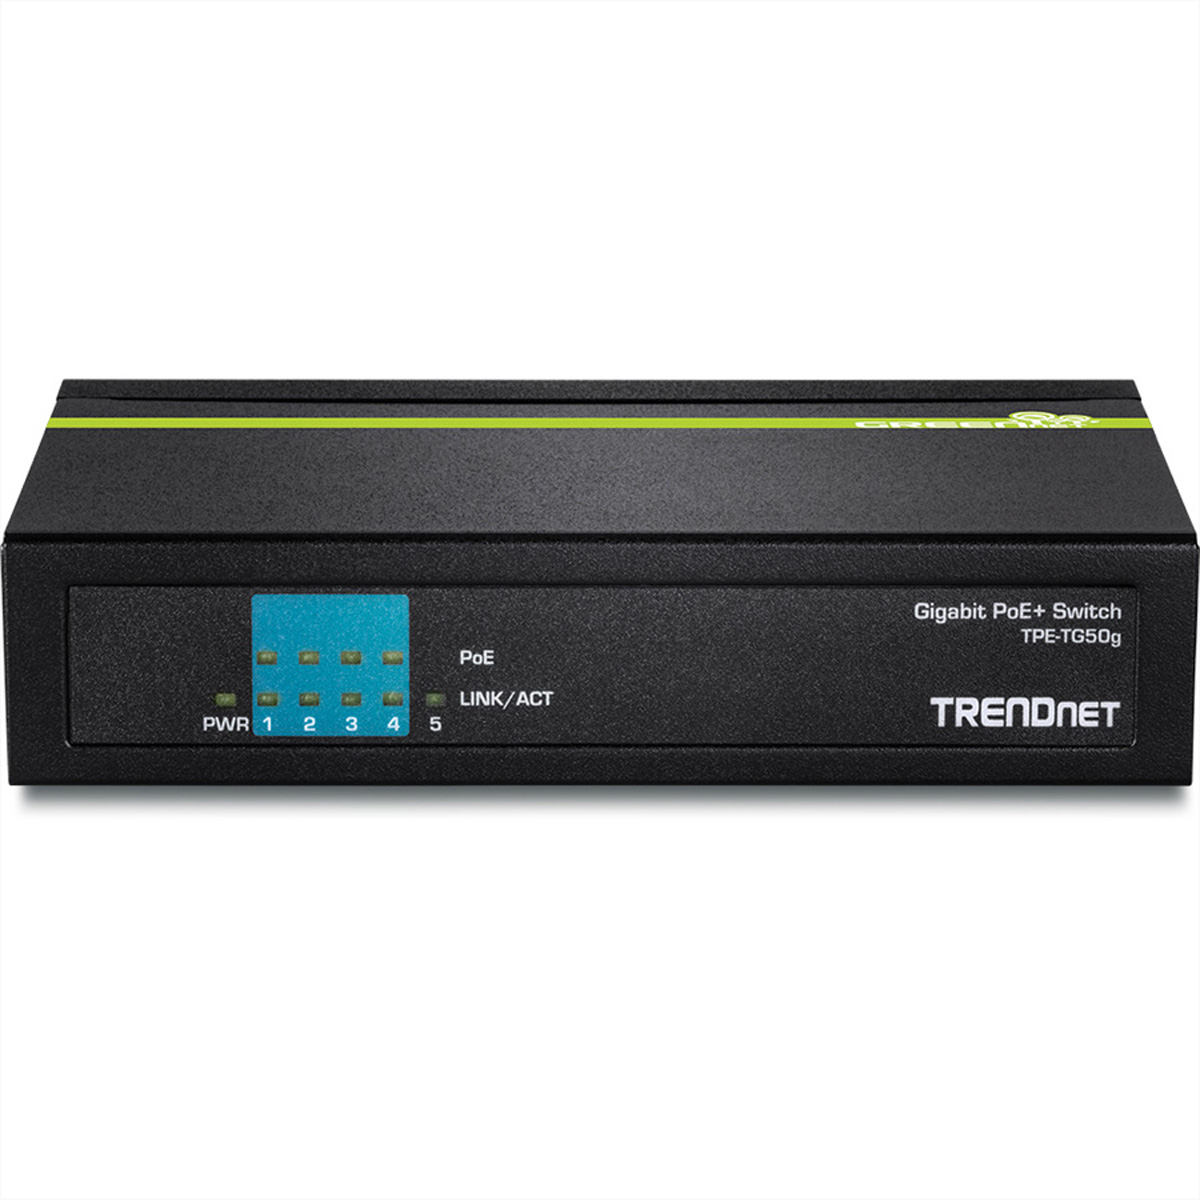 5-Port PoE+ Switch TRENDNET Gigabit Ethernet Gigabit TPE-TG50g Switch